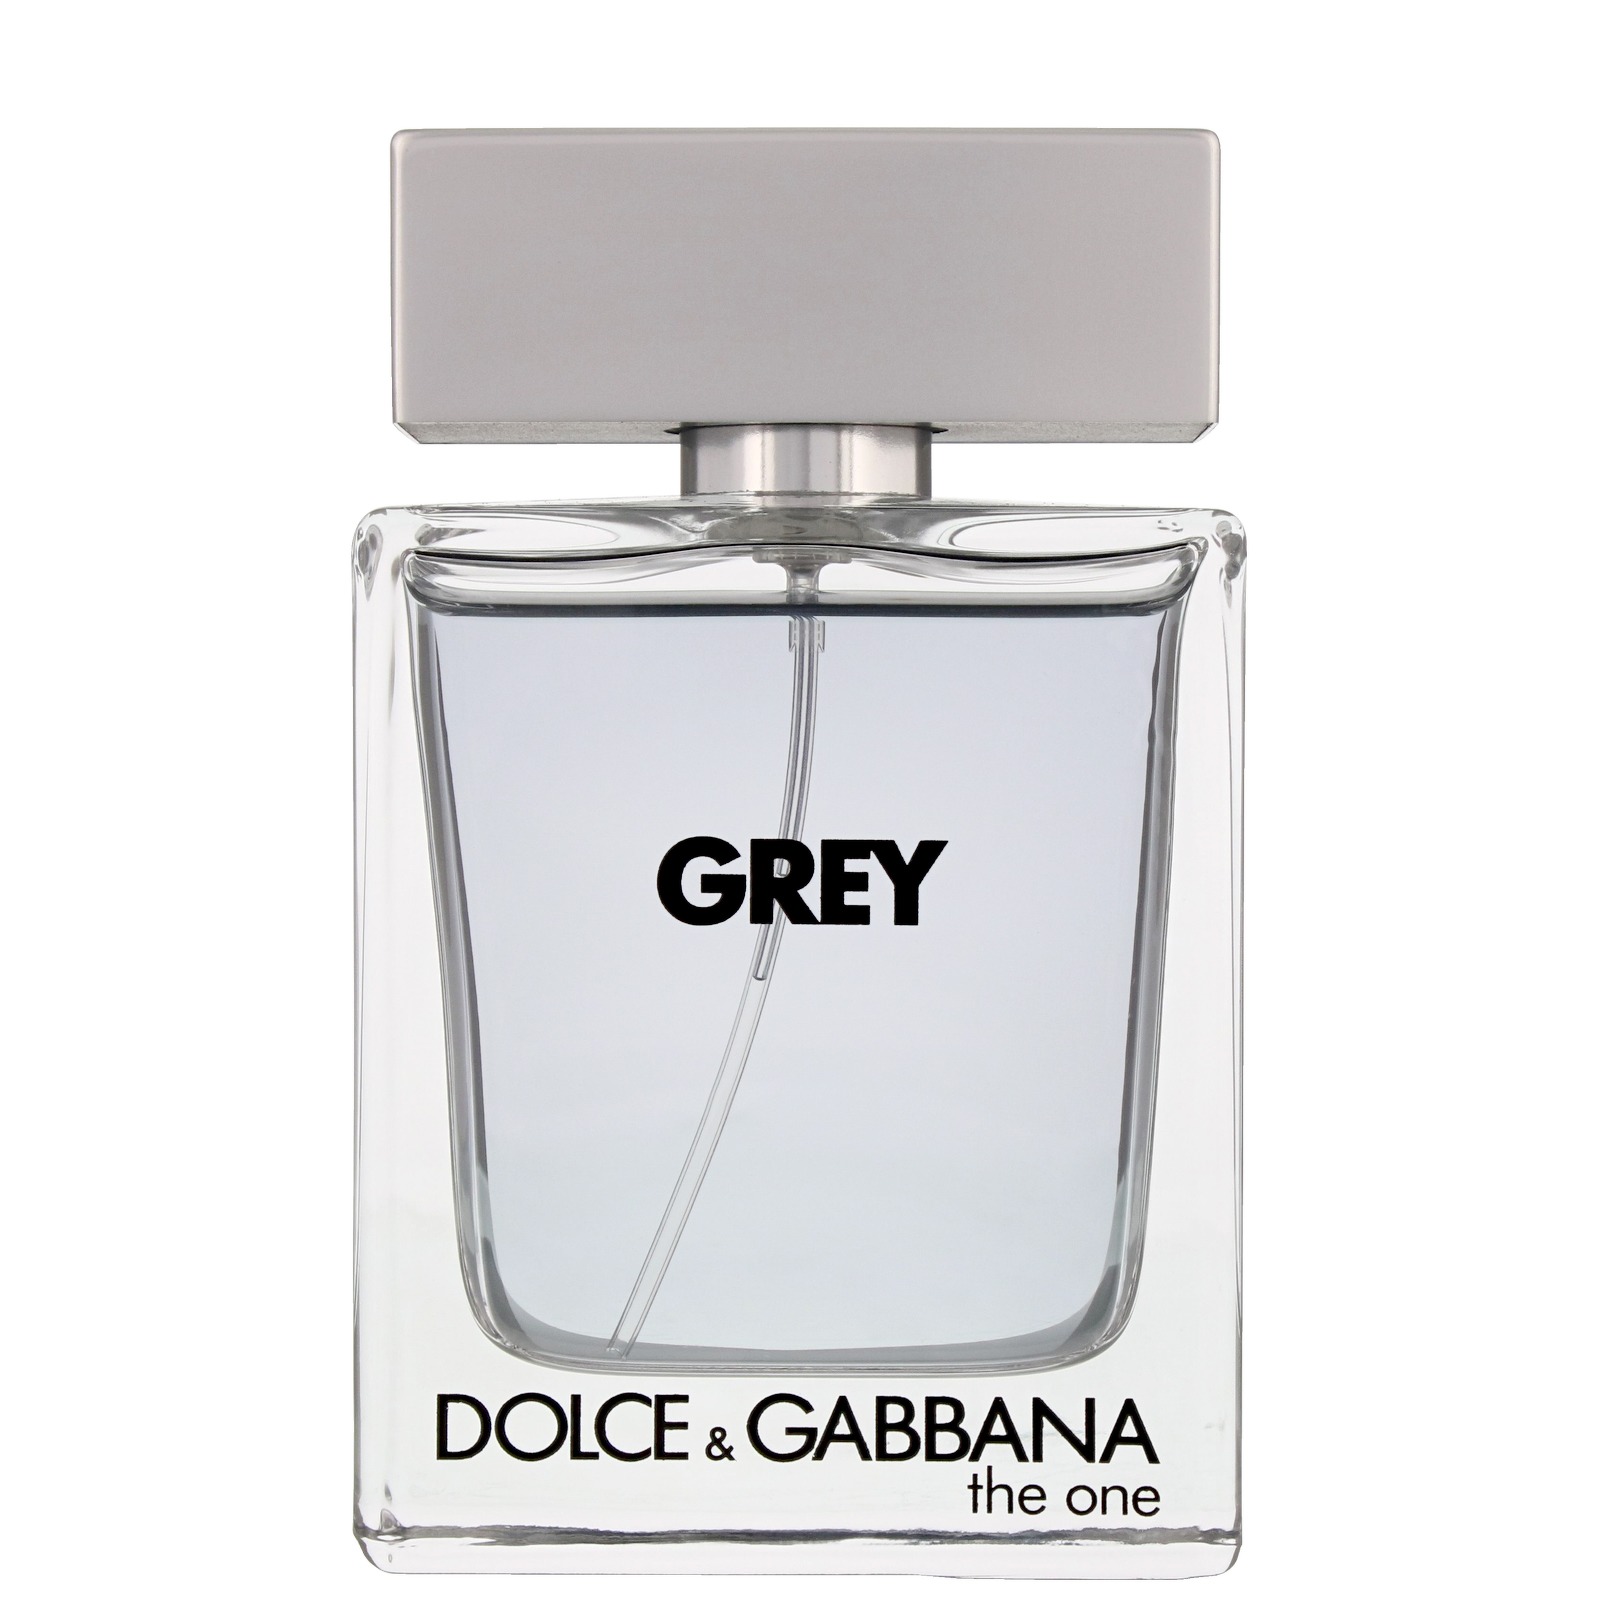 Духи грей. Парфюм грей Дольче Габбана. Grey Dolce Gabbana 100ml. Dolce Gabbana the one Grey 50ml. Dolce Gabbana Grey духи мужские.